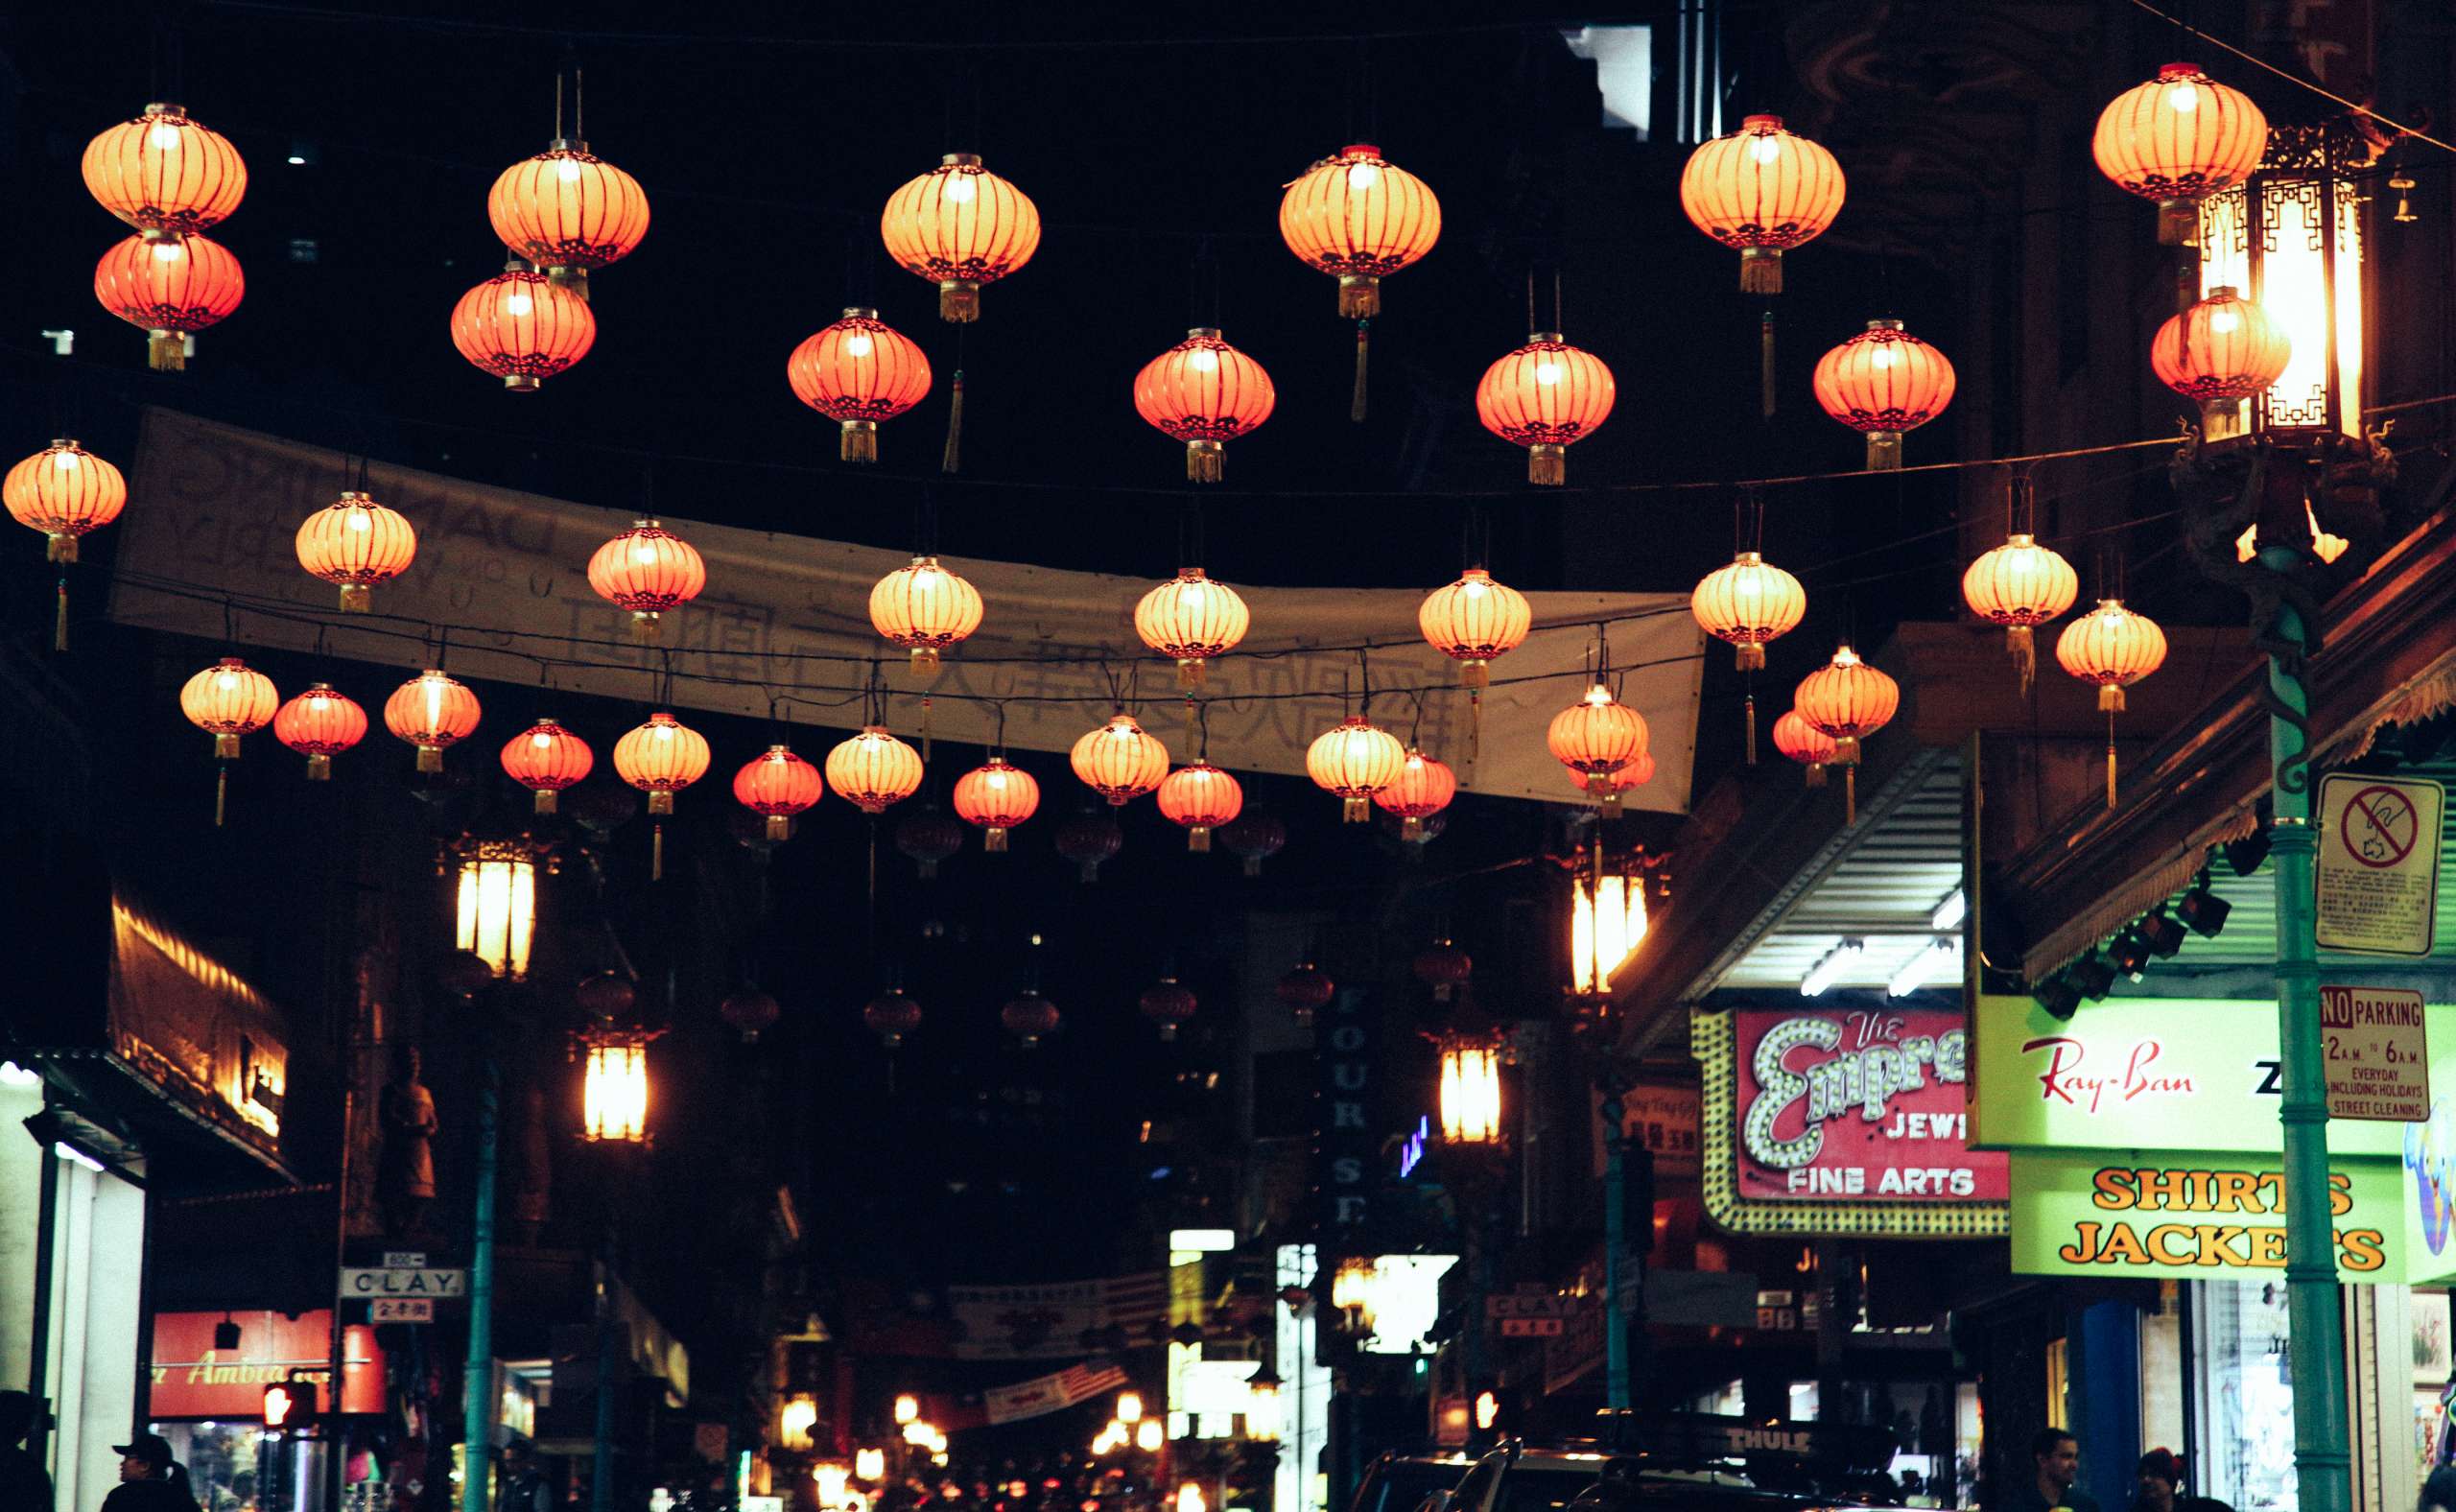 Chinese lanterns strung and lit at night.